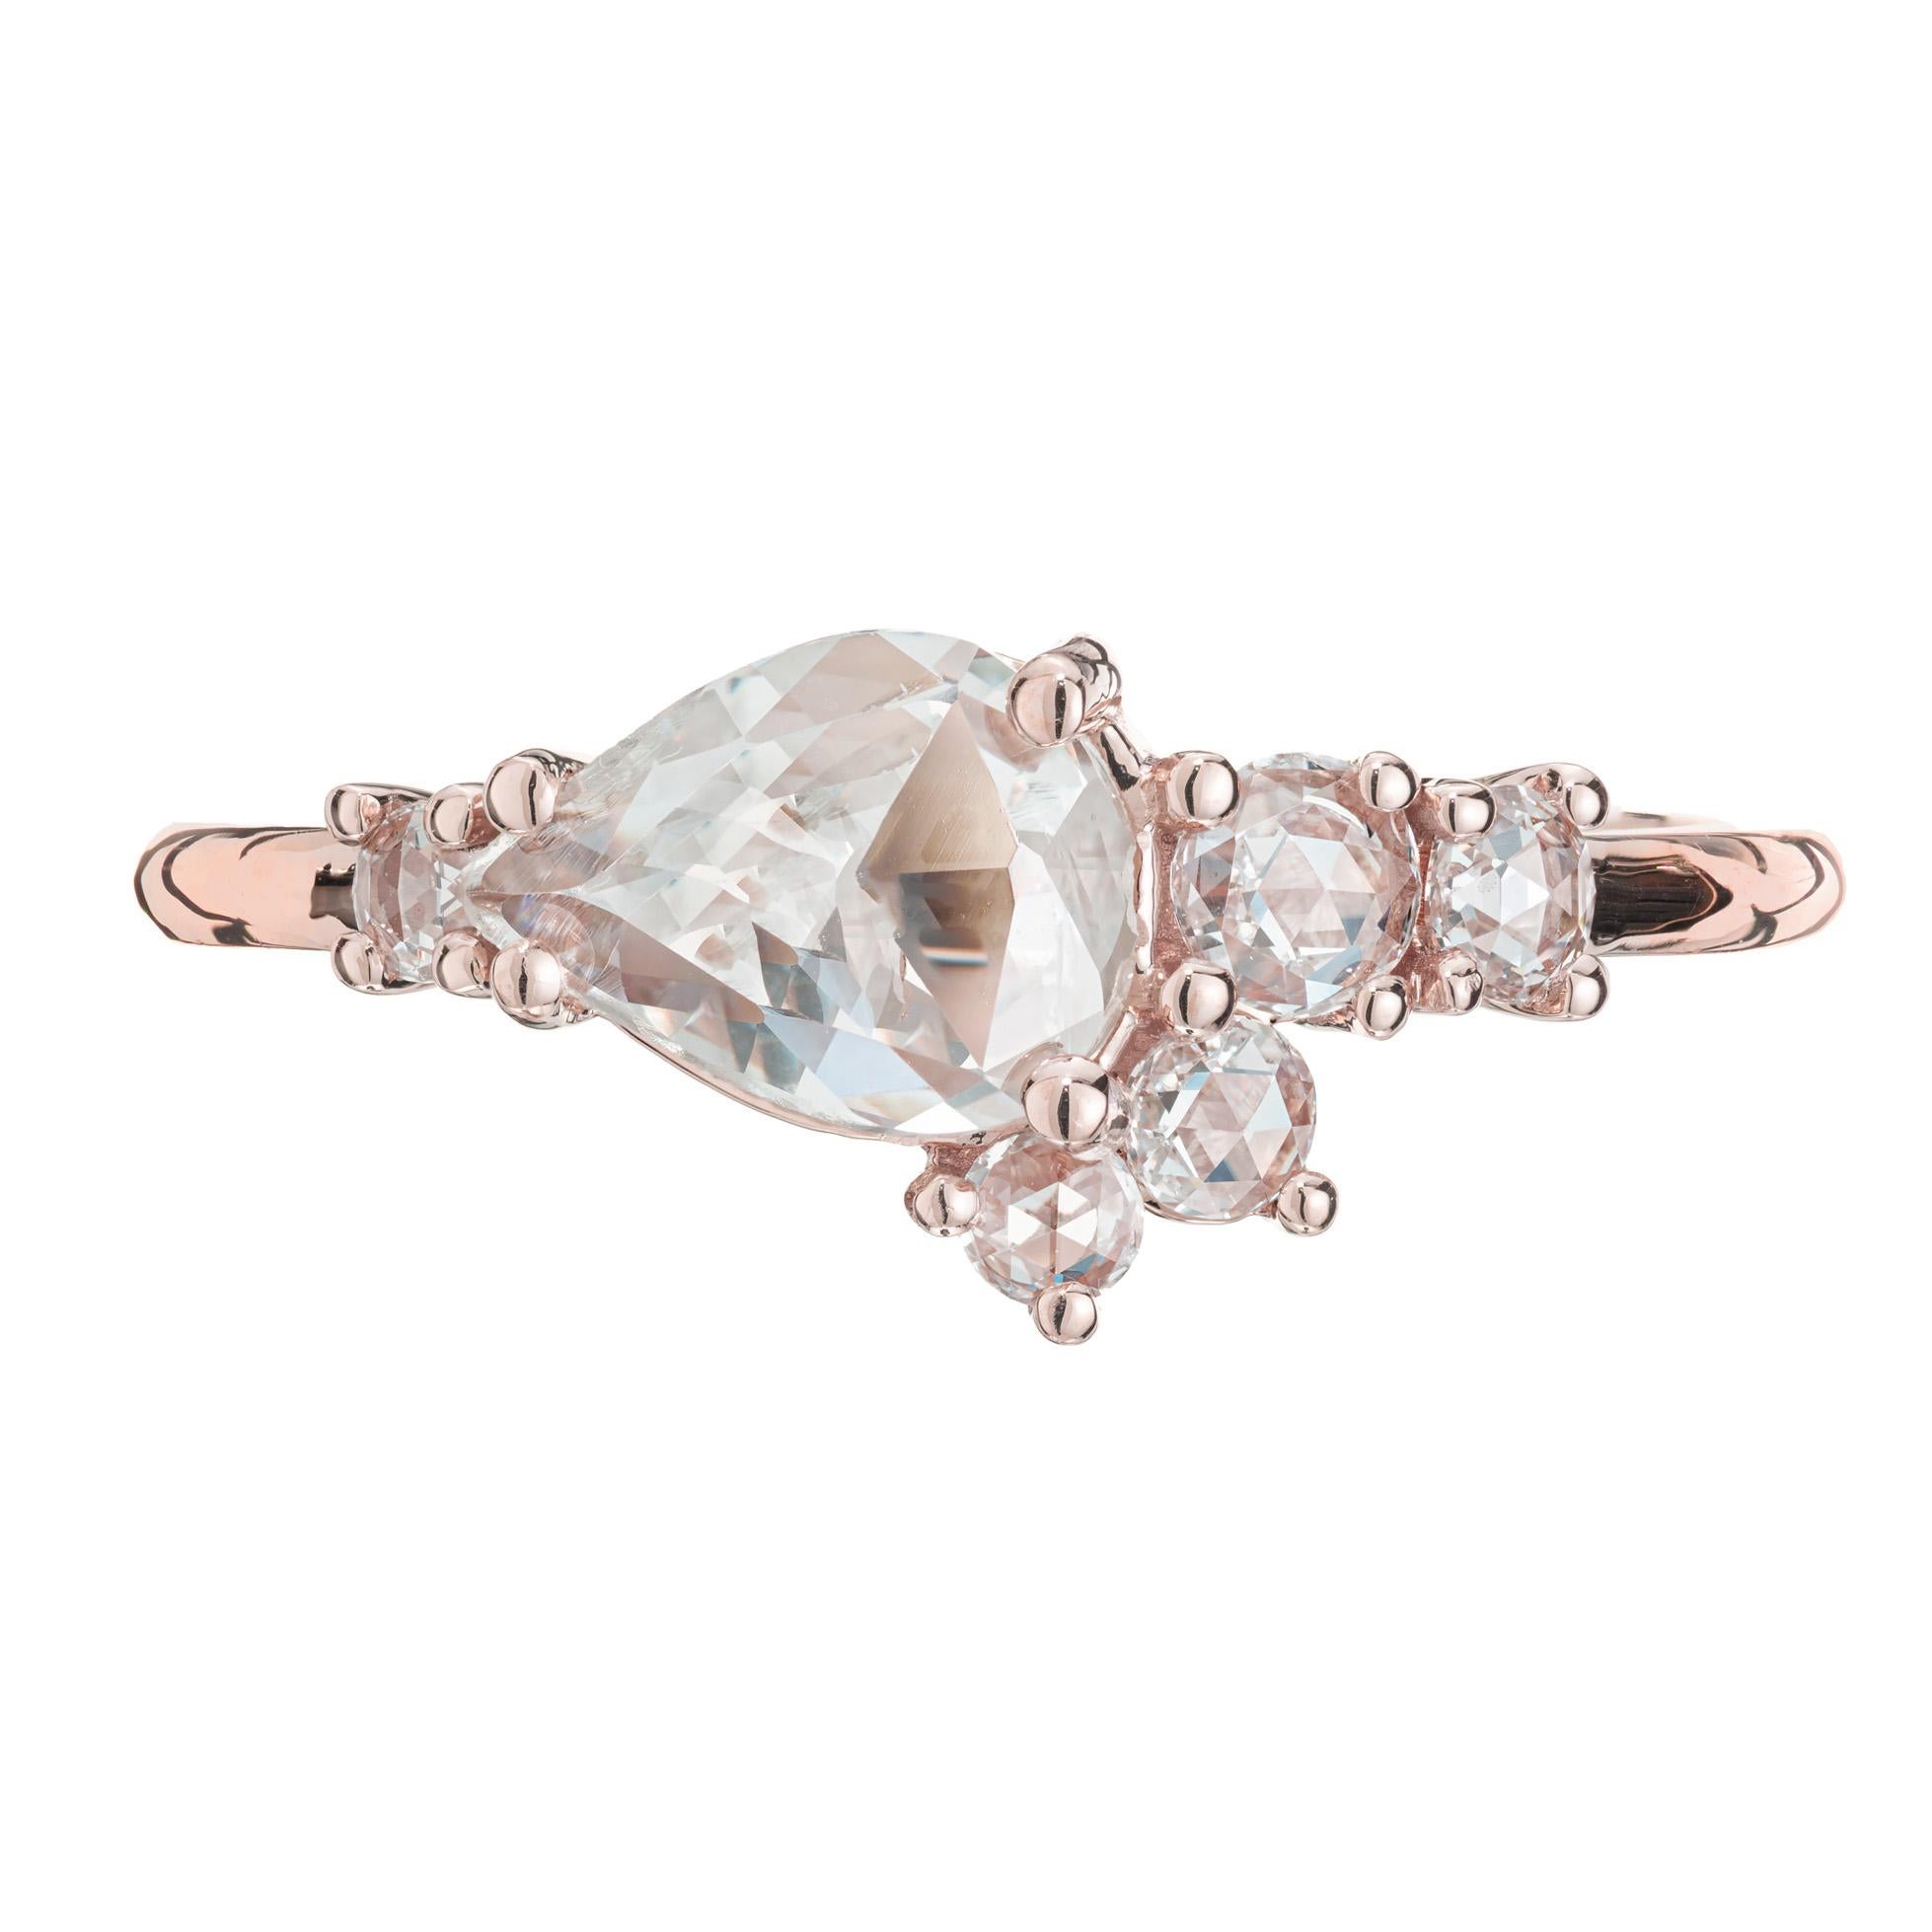 Bague de fiançailles en diamant. Diamant poire de taille rose, datant des années 1850, serti dans une monture en or rose 14k avec 5 diamants d'accentuation de taille rose. Certifié GIA dans une toute nouvelle bague au design alternatif conçue et